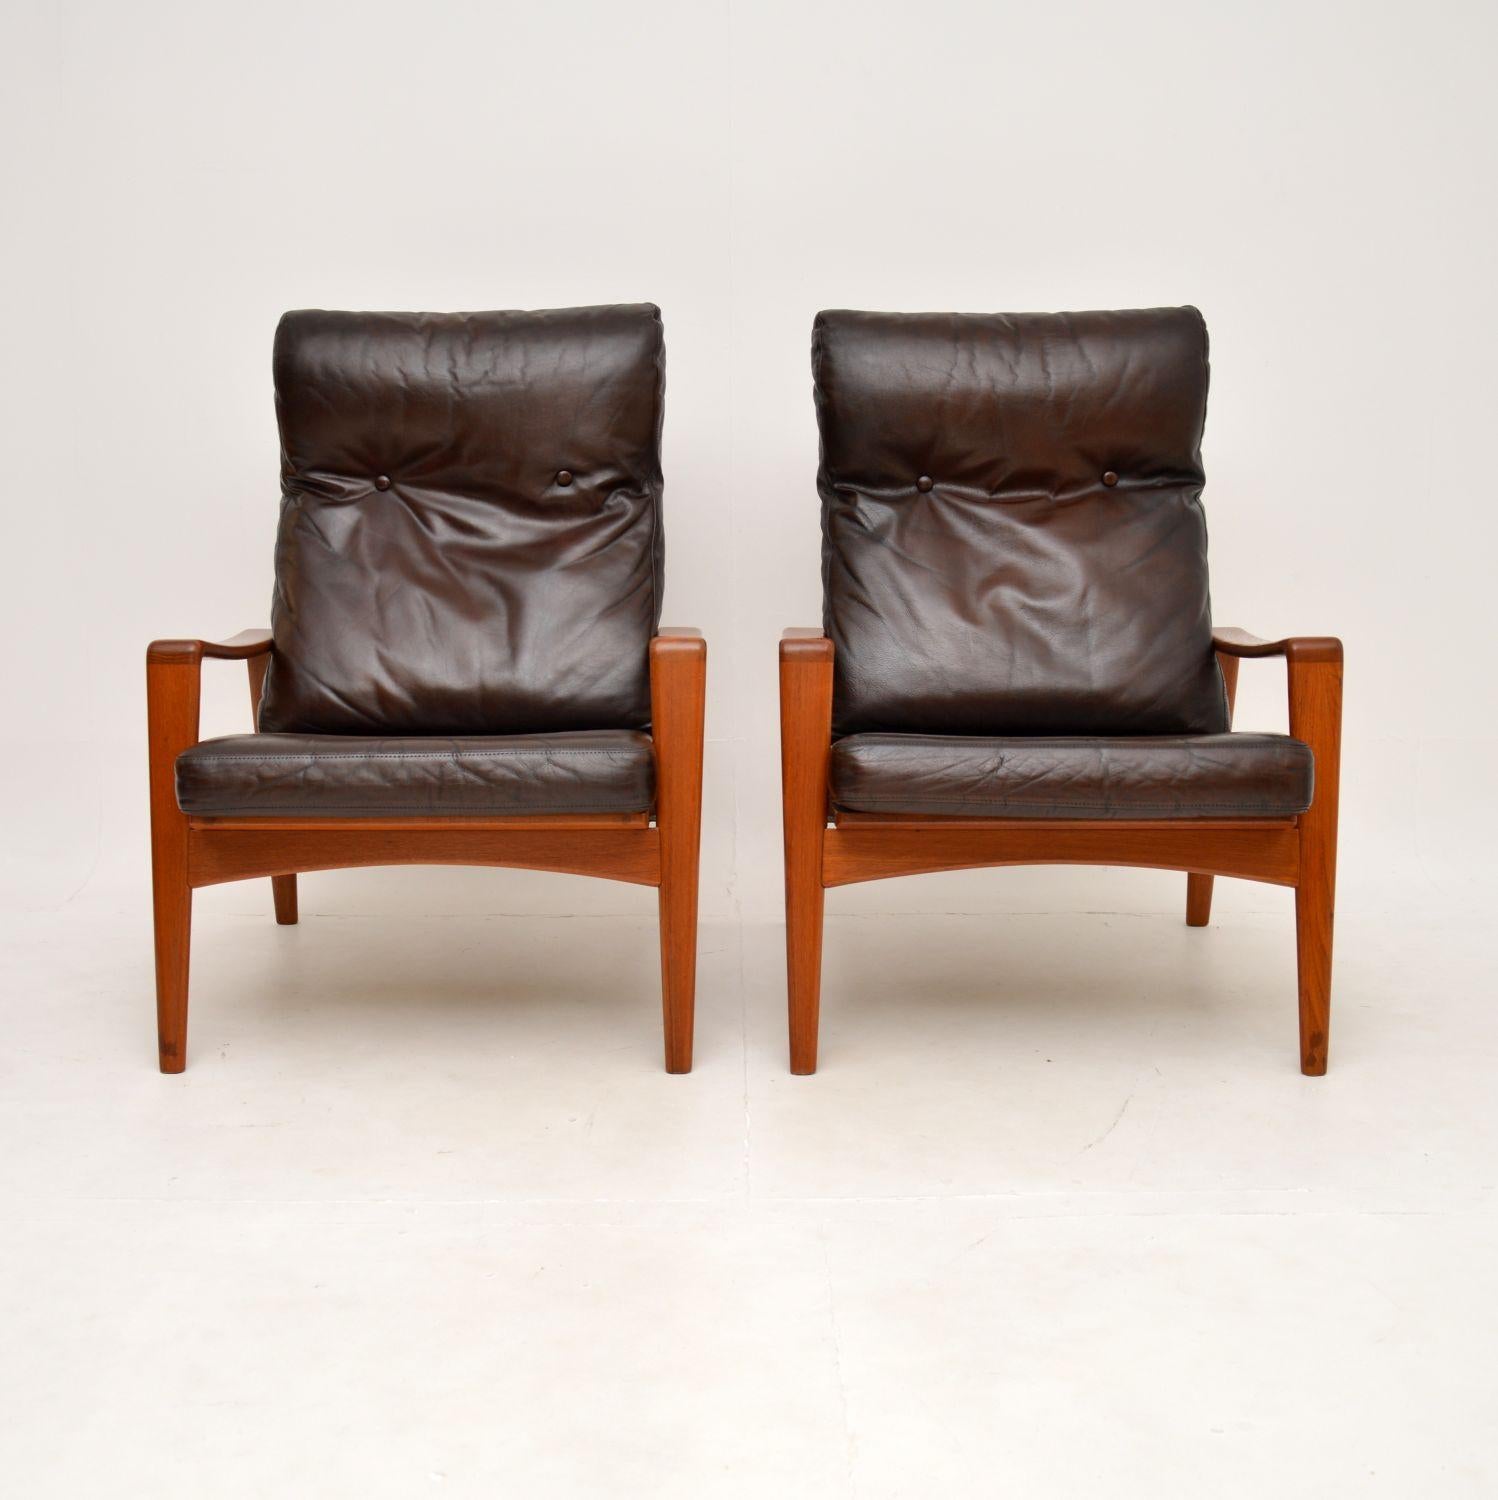 Une paire de fauteuils vintage danois en teck et cuir par Arne Wahl Iversen, élégante et extrêmement confortable. Fabriqués au Danemark par Komfort, ils datent des années 1960.

La qualité est exceptionnelle, ils sont magnifiquement conçus avec de